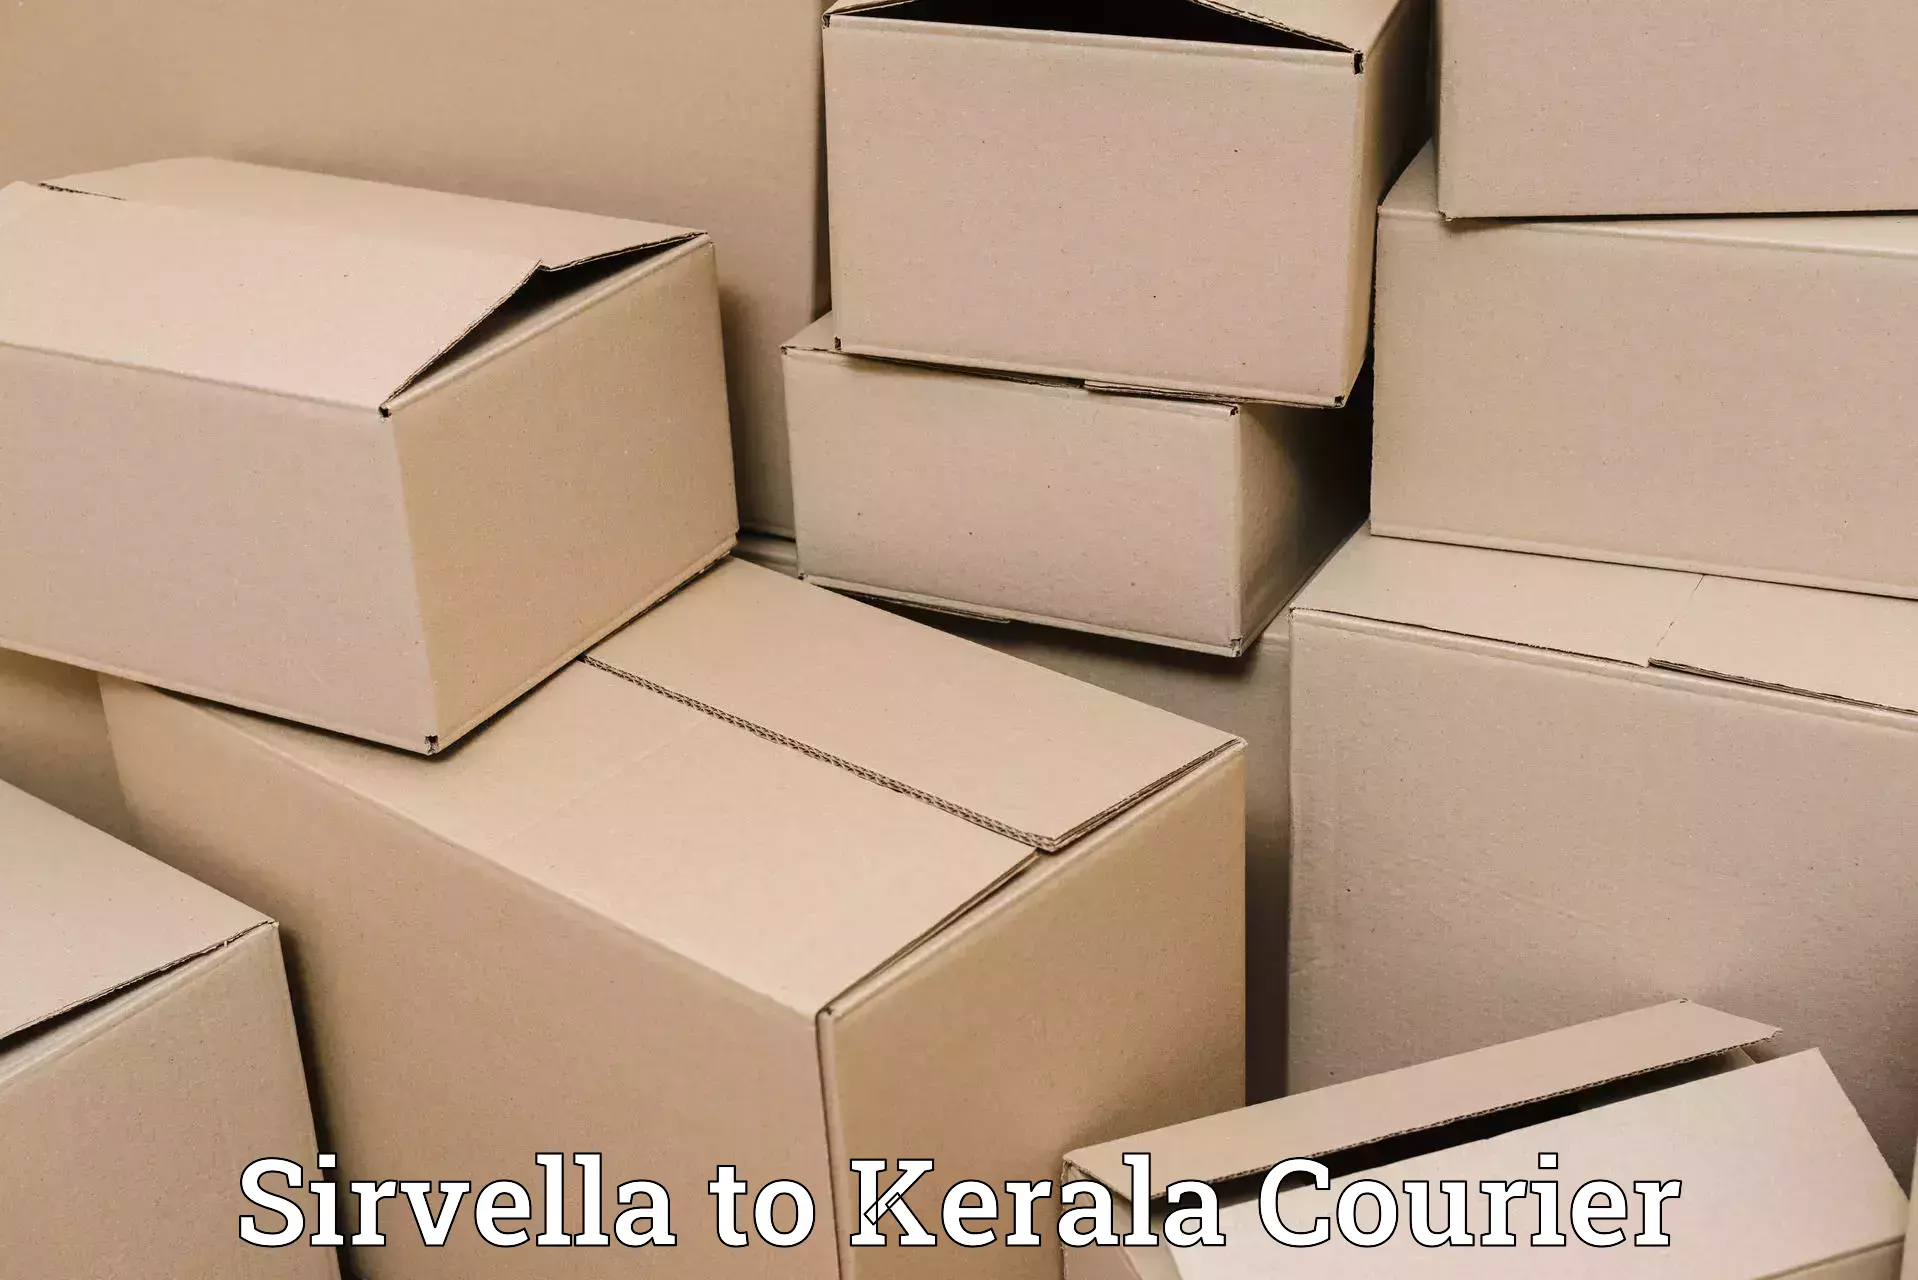 Baggage transport scheduler Sirvella to Kerala